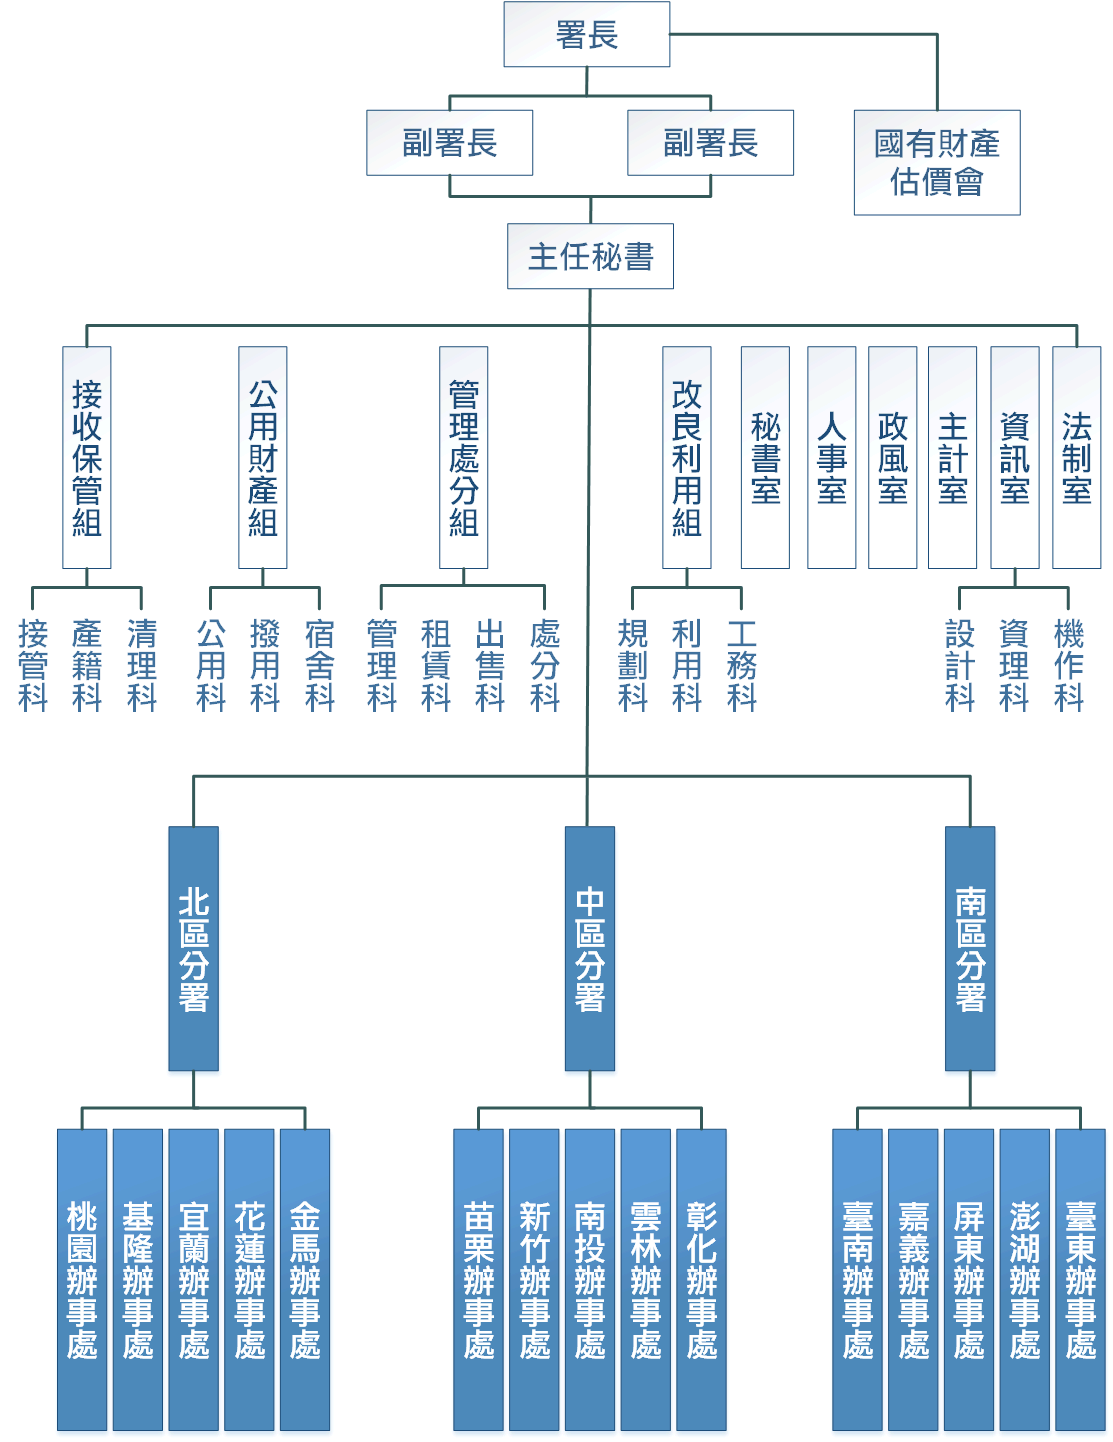 署本部組織系統表